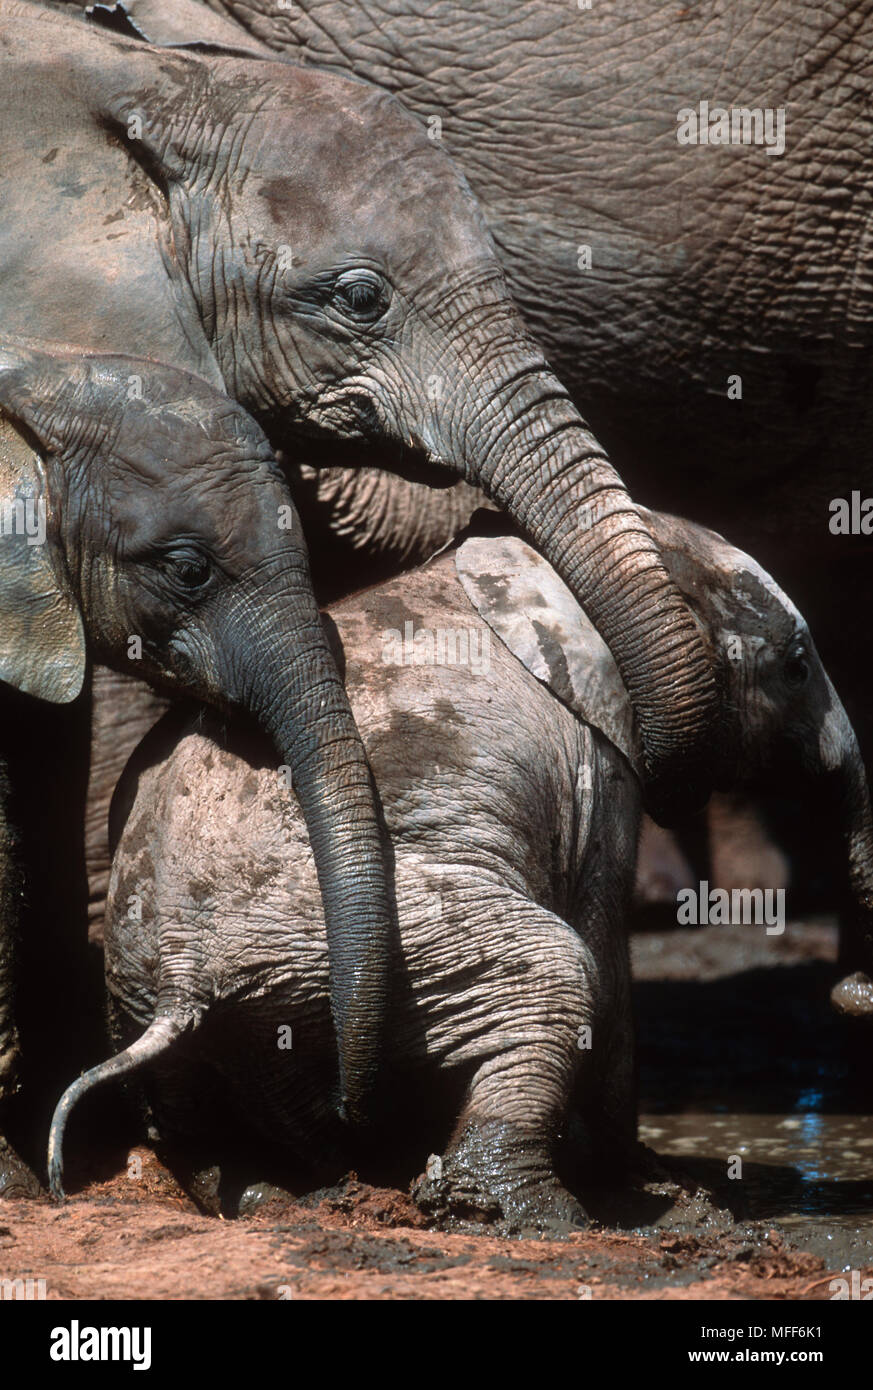 Elefante Africano Loxodonta africana ternero ser ayudado por mayores elefantes Addo Elephant National Park, Sudáfrica Foto de stock